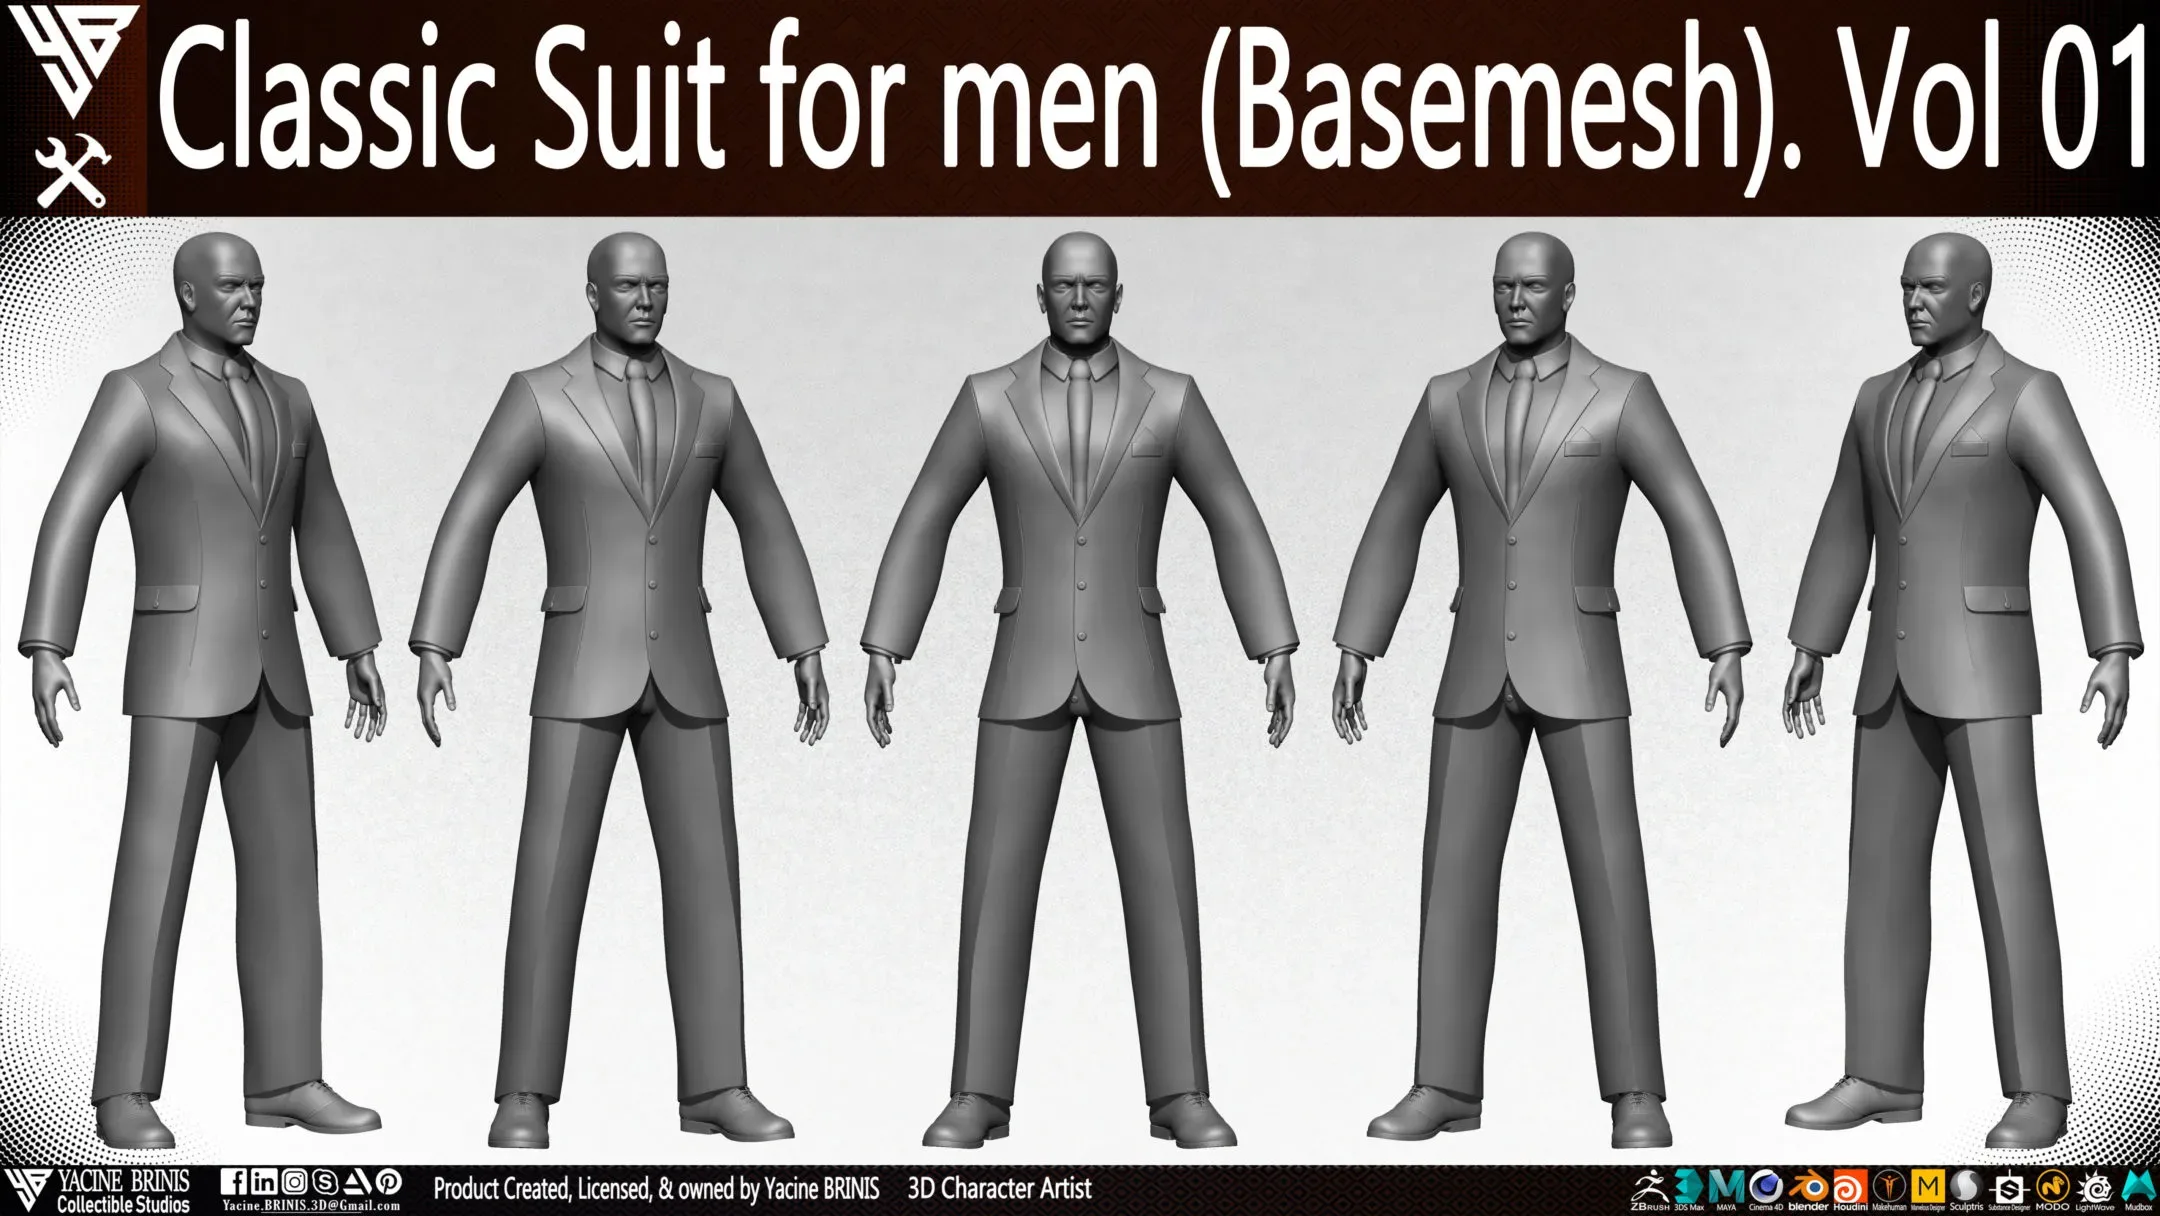 Classic Suit for men (Basemesh) Vol 01